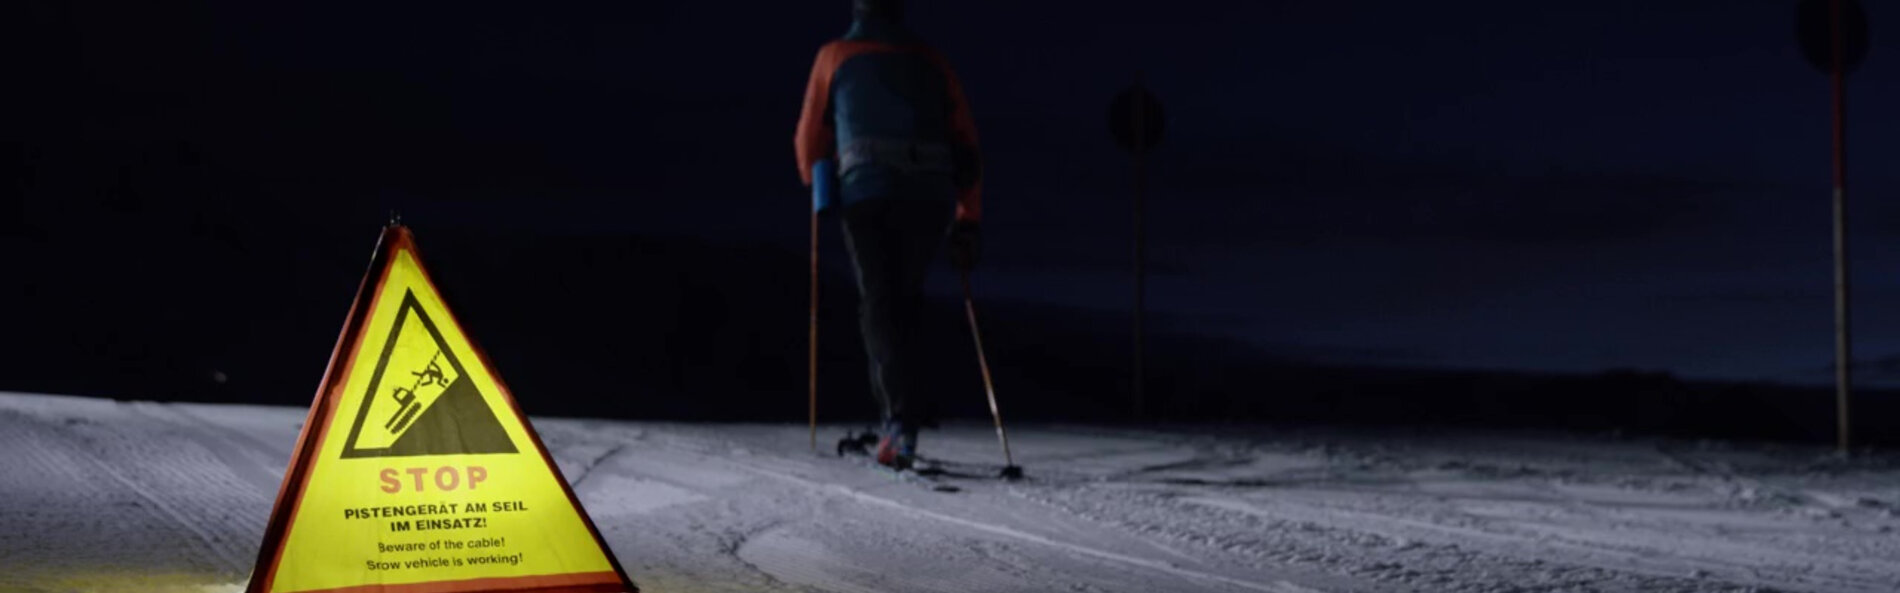 Tourer ignores warning notice on ski slope at night.